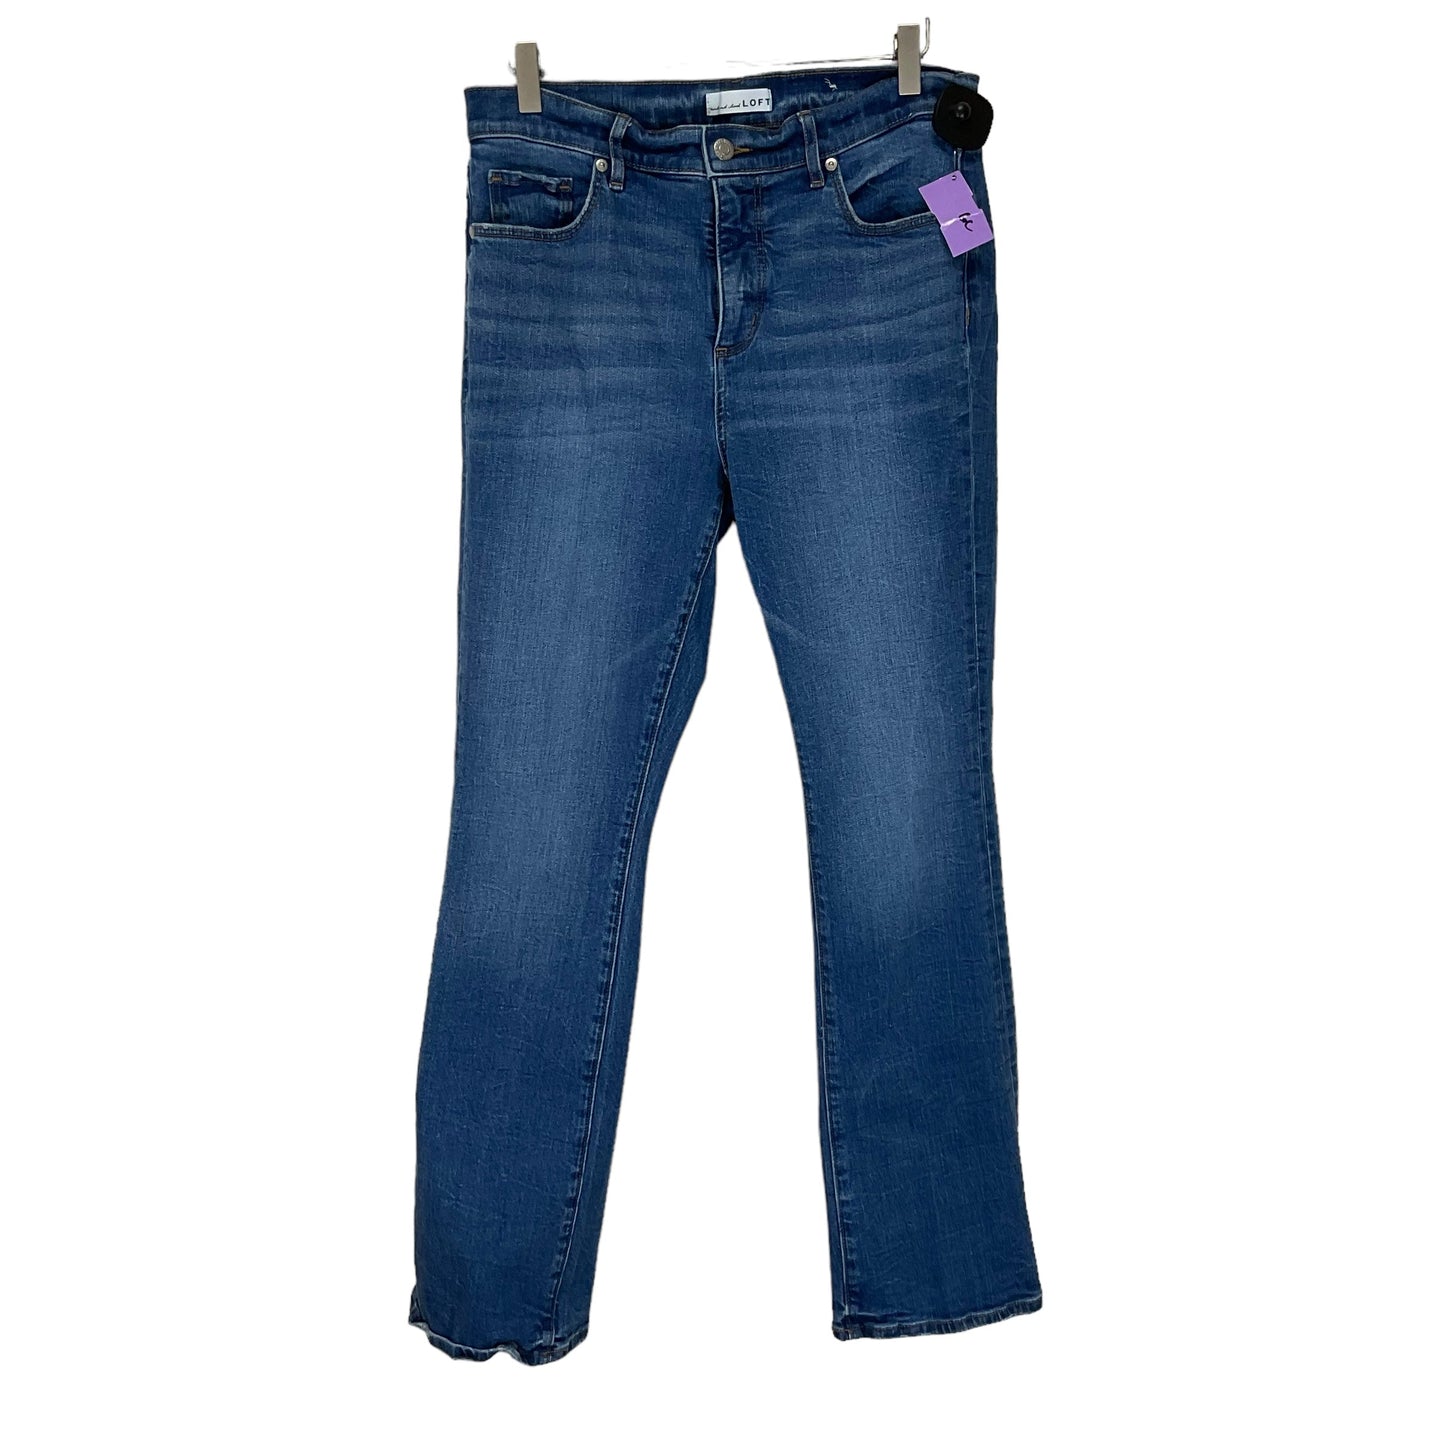 Blue Denim Jeans Boot Cut Loft, Size 10